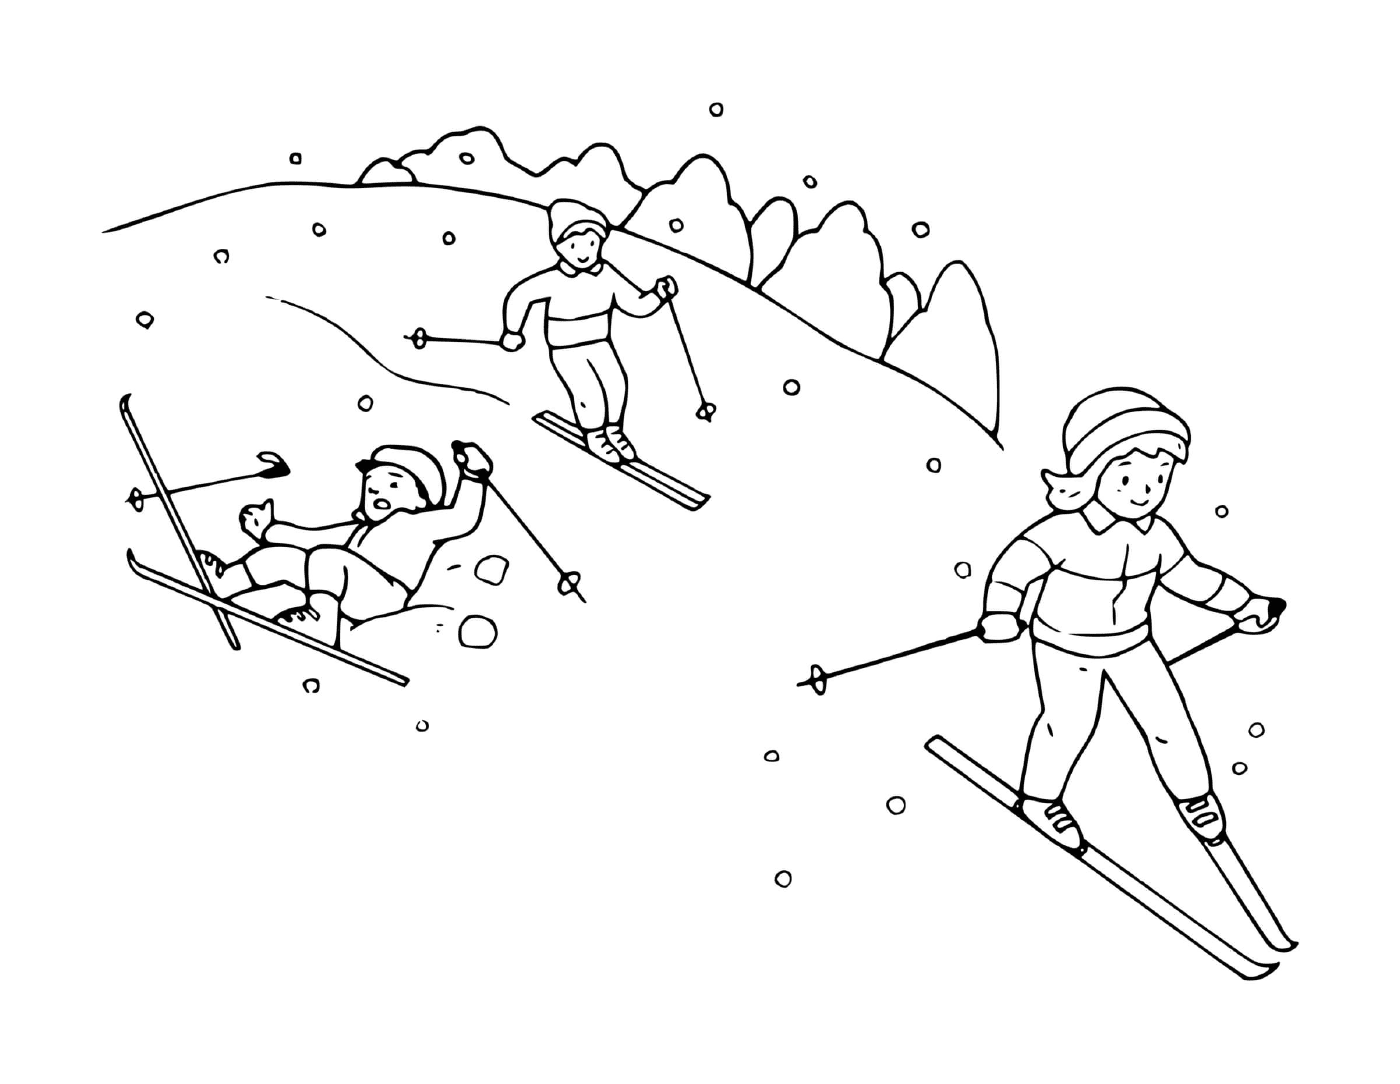  Familie hat Spaß beim Skifahren zusammen 